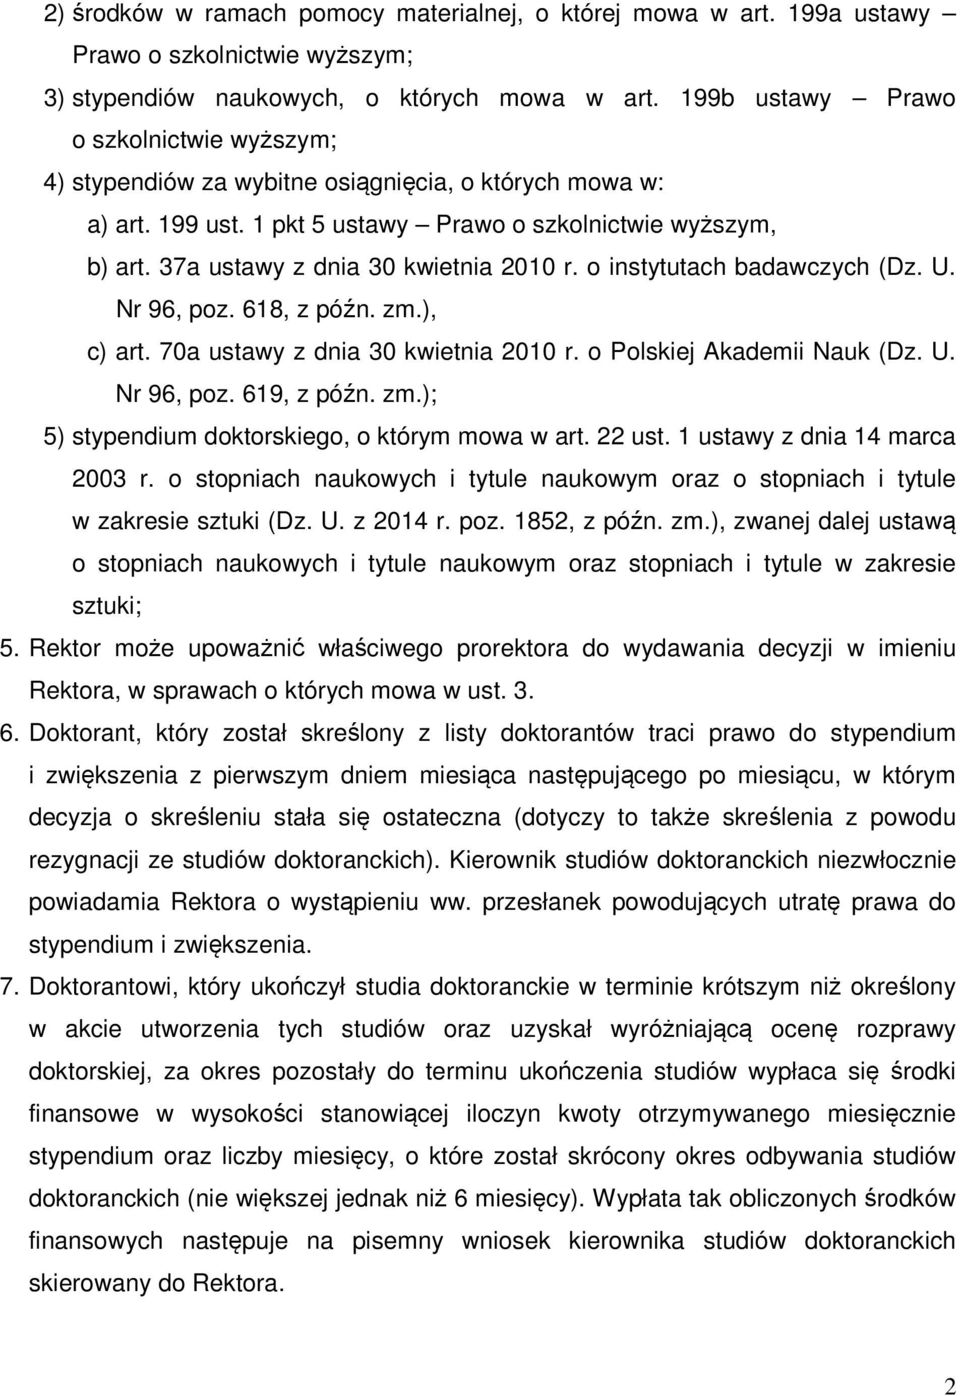 37a ustawy z dnia 30 kwietnia 2010 r. o instytutach badawczych (Dz. U. Nr 96, poz. 618, z późn. zm.), c) art. 70a ustawy z dnia 30 kwietnia 2010 r. o Polskiej Akademii Nauk (Dz. U. Nr 96, poz. 619, z późn.